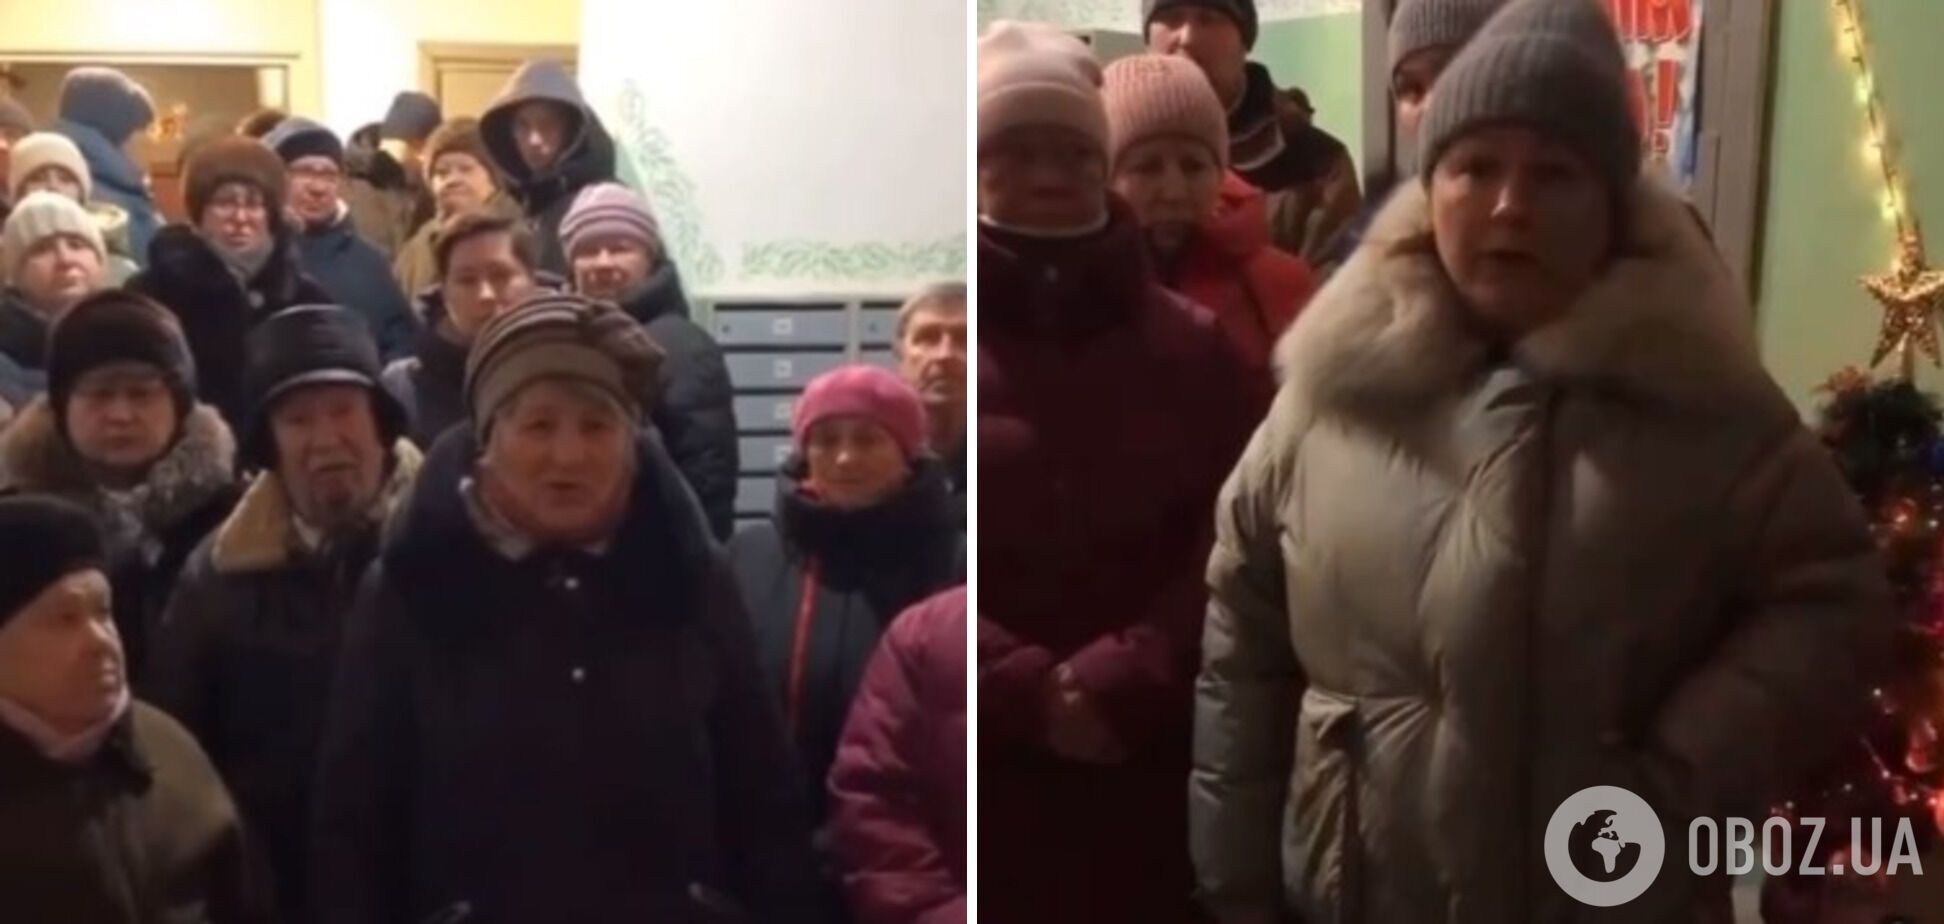 'Таке відчуття, що нас хочуть стерти з лиця землі': мешканці підмосковного Воскресенська поскаржилися Путіну, що замерзають без опалення